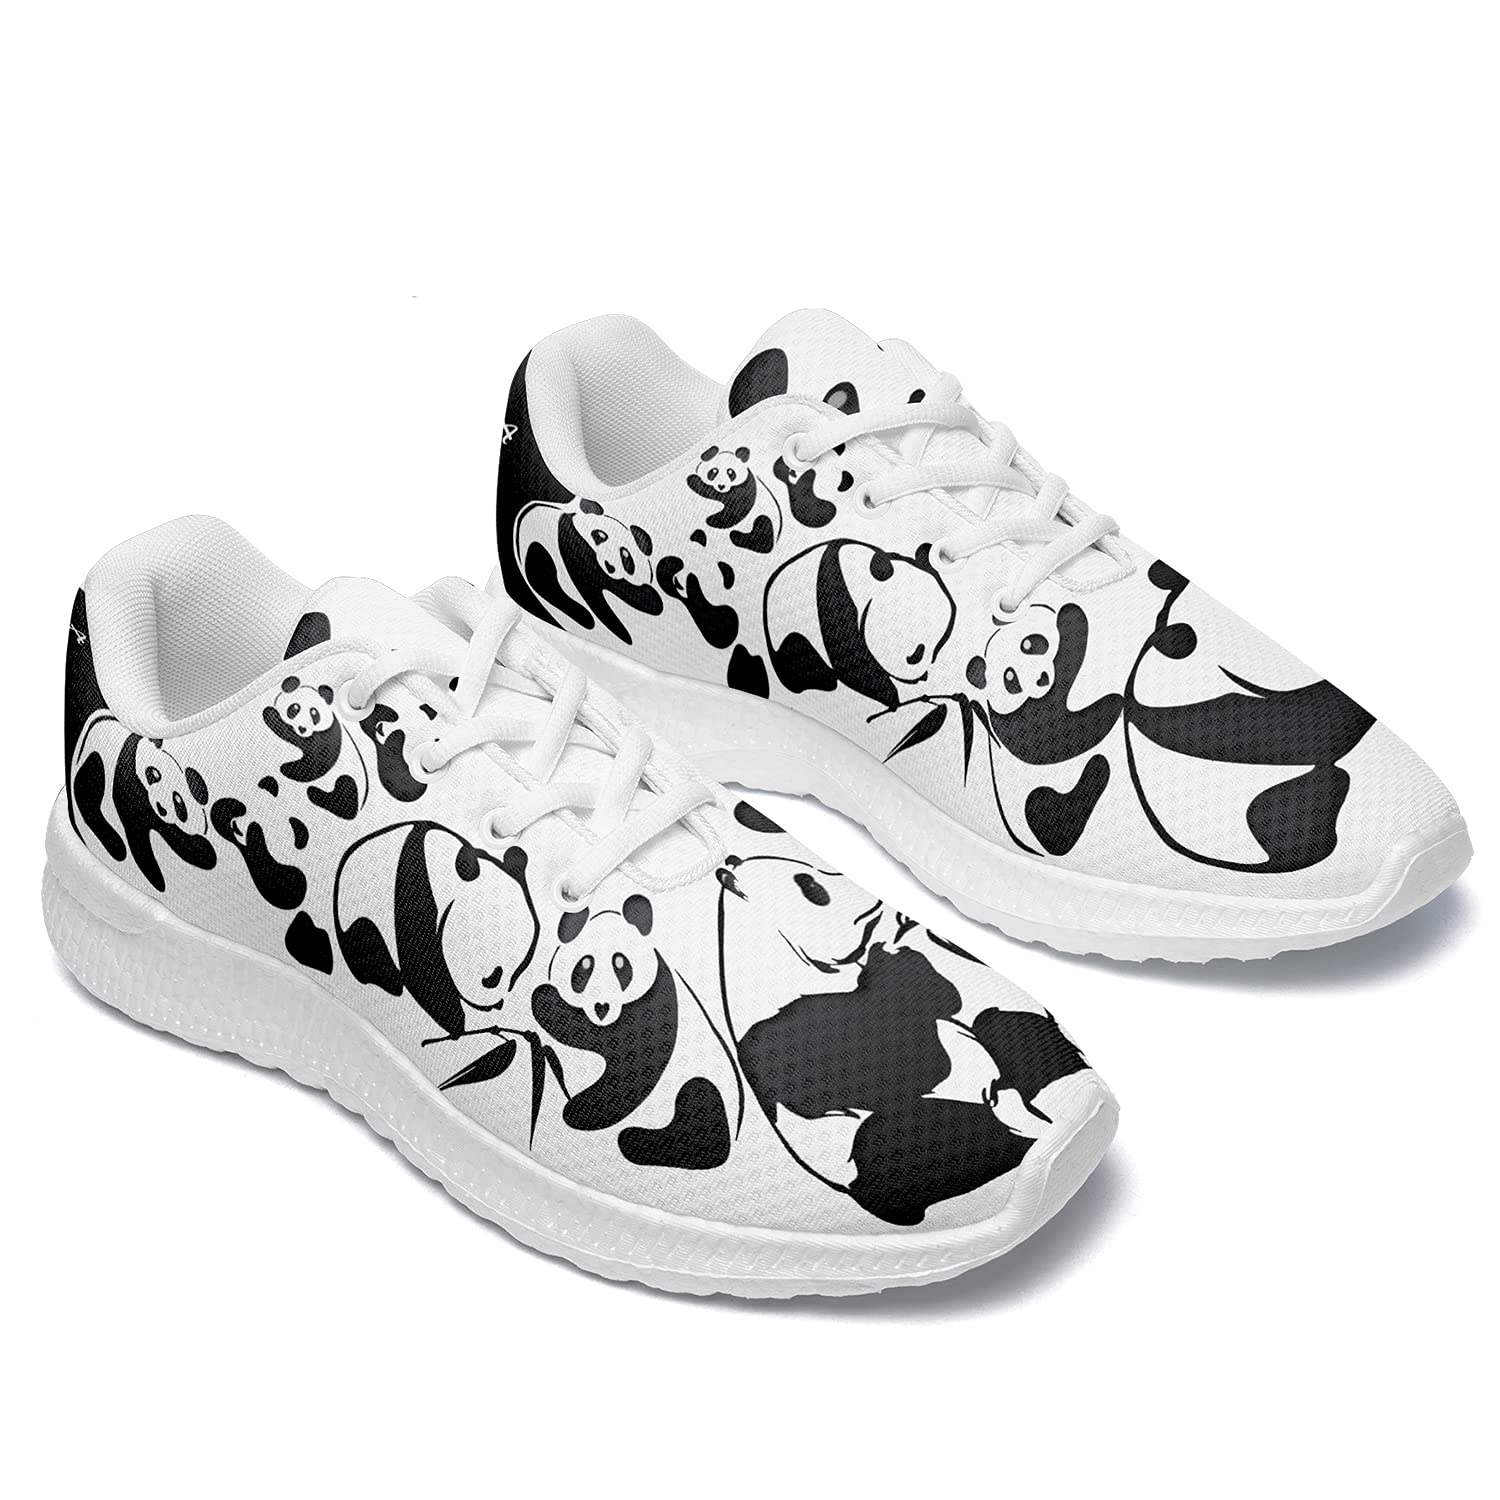 Panda Athletic Walking Zapatos casuales para mujer